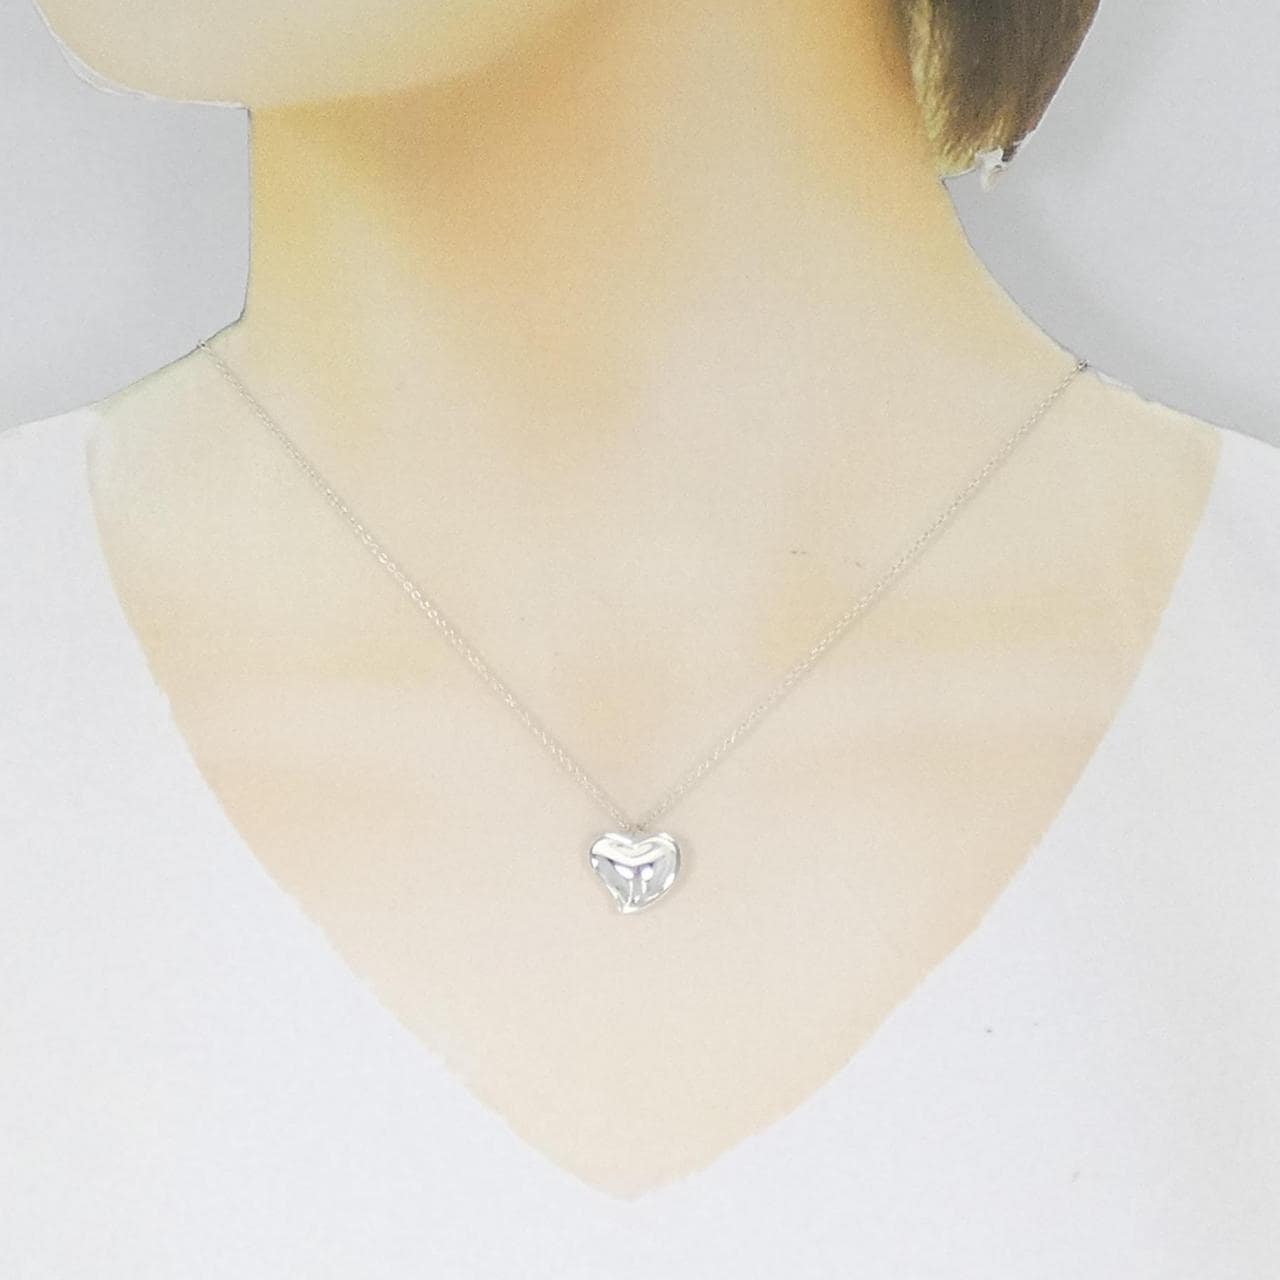 TIFFANY heart necklace